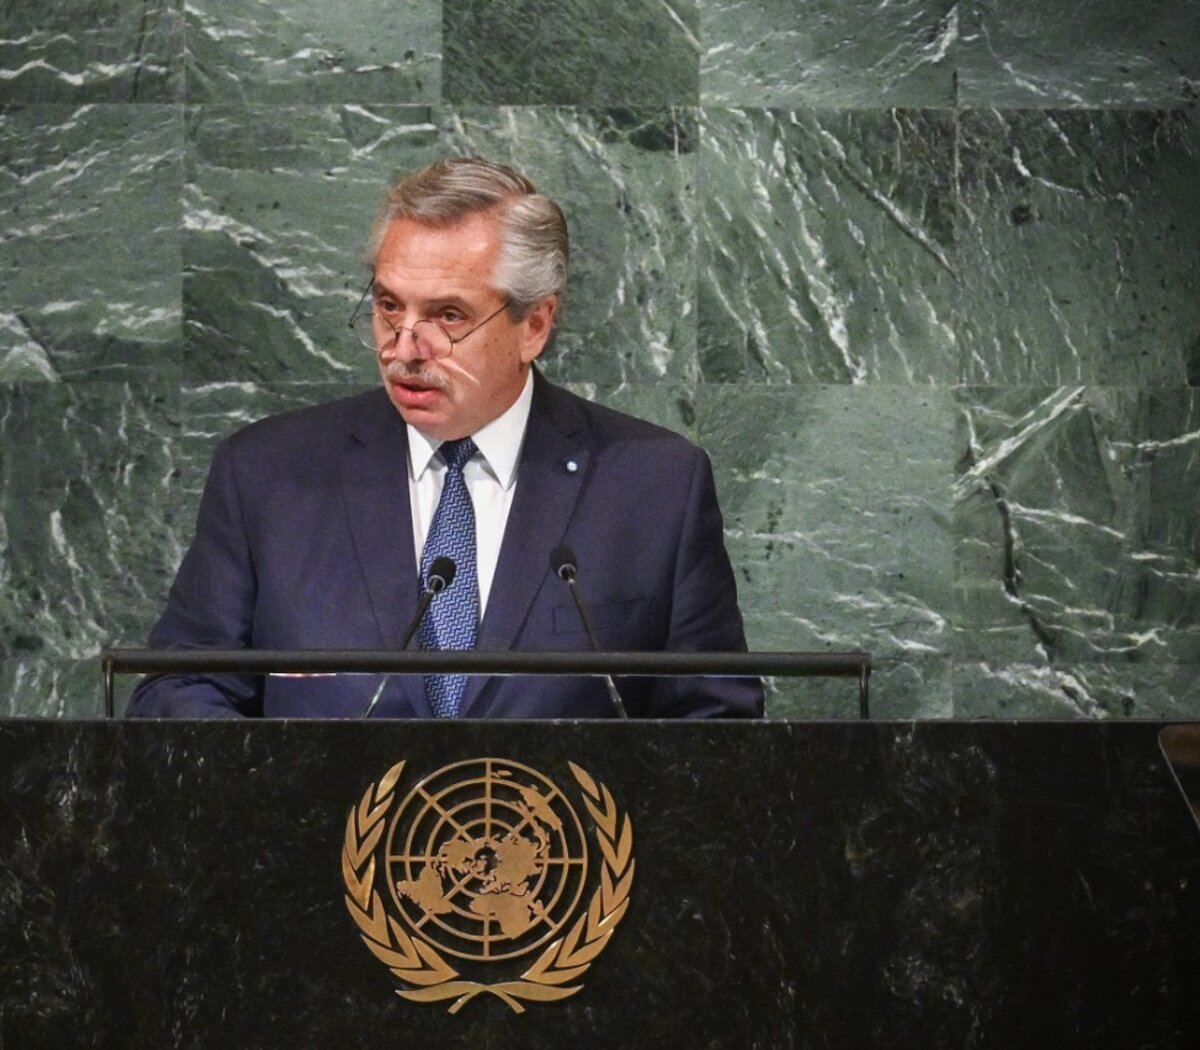 El último discurso de Alberto Fernández ante la ONU: pidió levantar los bloqueos a Cuba y Venezuela y criticó al FMI • Canal C